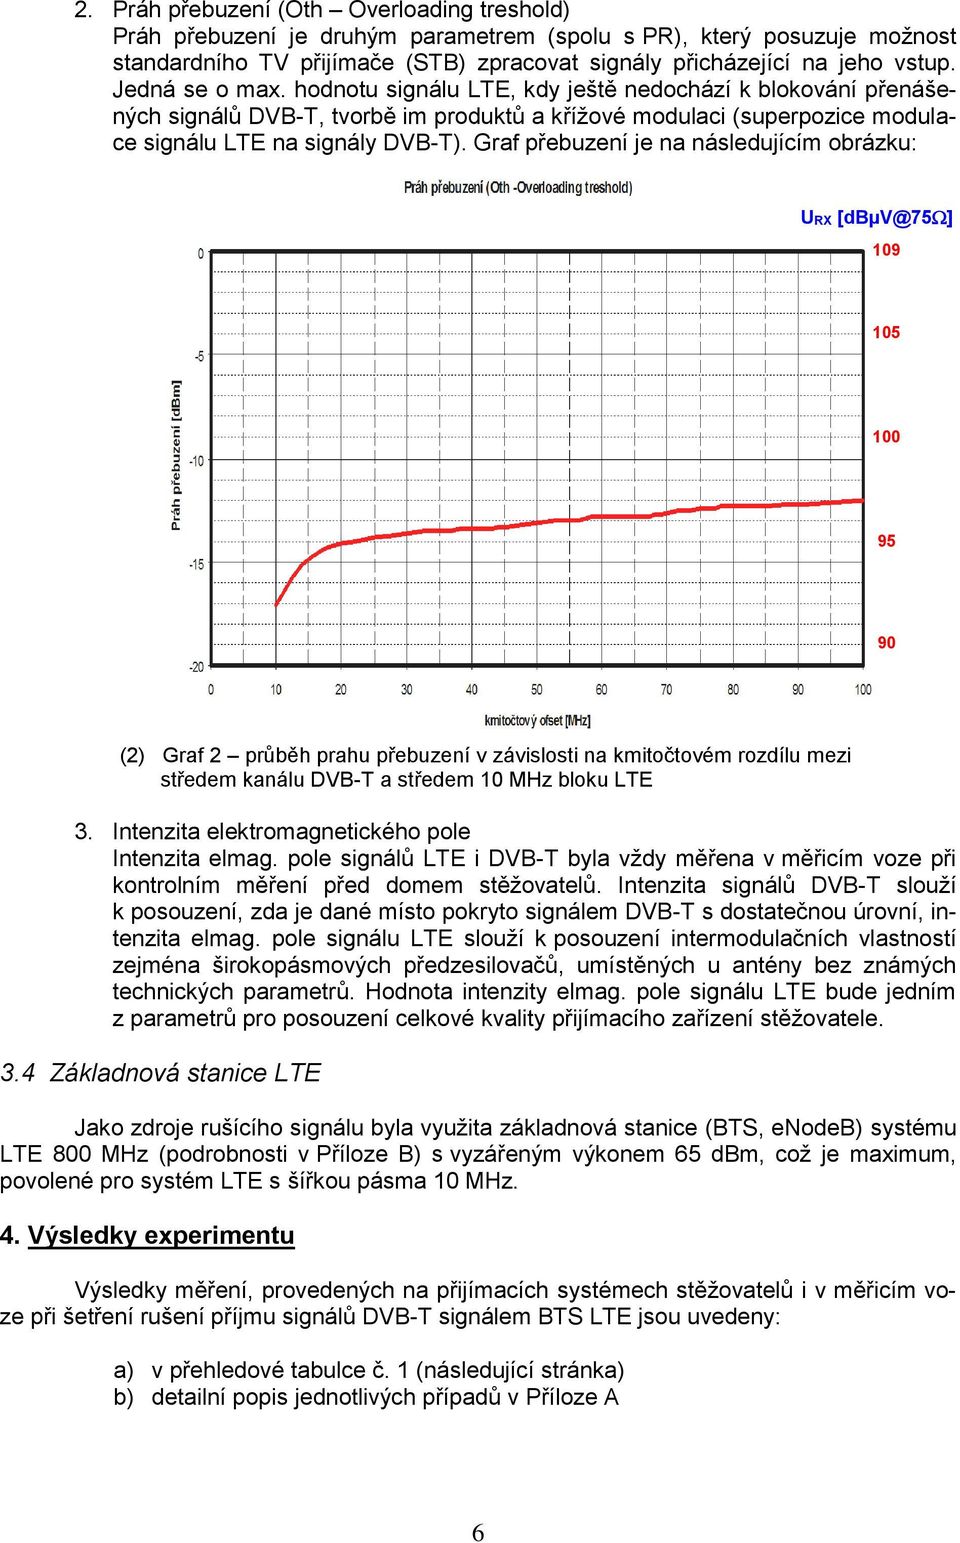 Graf přebuzení je na následujícím obrázku: URX [dbµv@75 ] 109 105 100 95 90 (2) Graf 2 průběh prahu přebuzení v závislosti na kmitočtovém rozdílu mezi středem kanálu DVB-T a středem 10 MHz bloku LTE